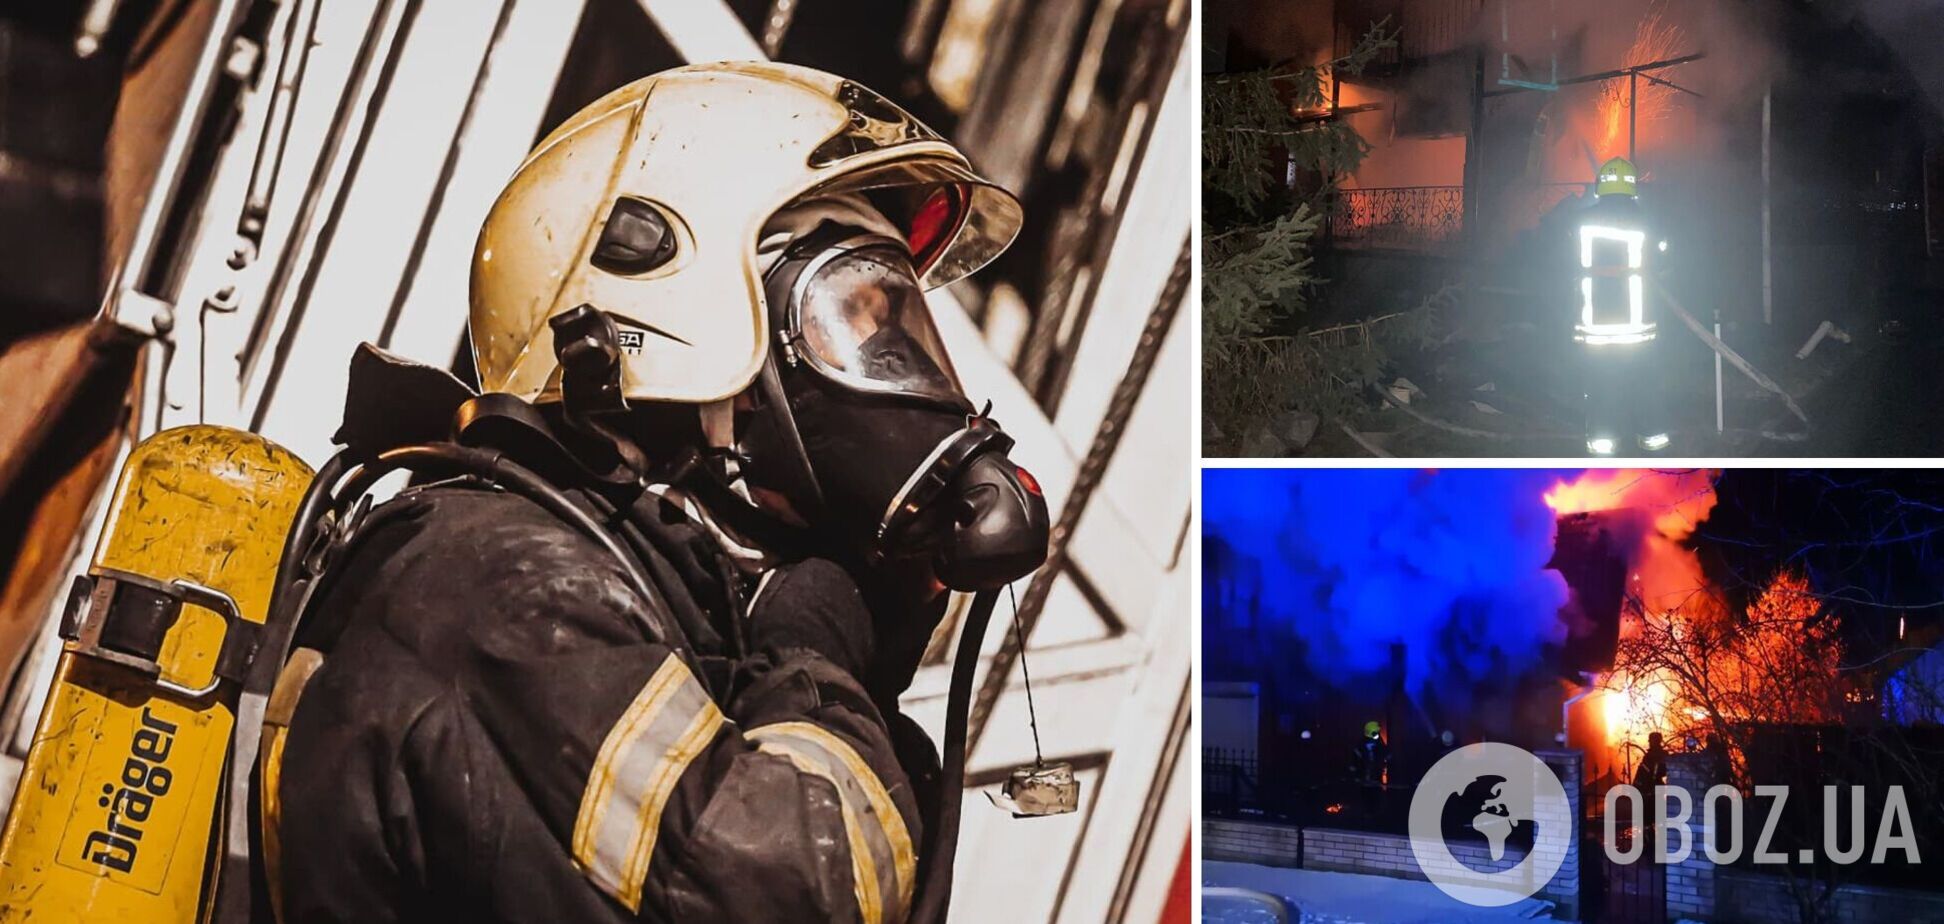 Рятувальники загасили пожежу в будинку